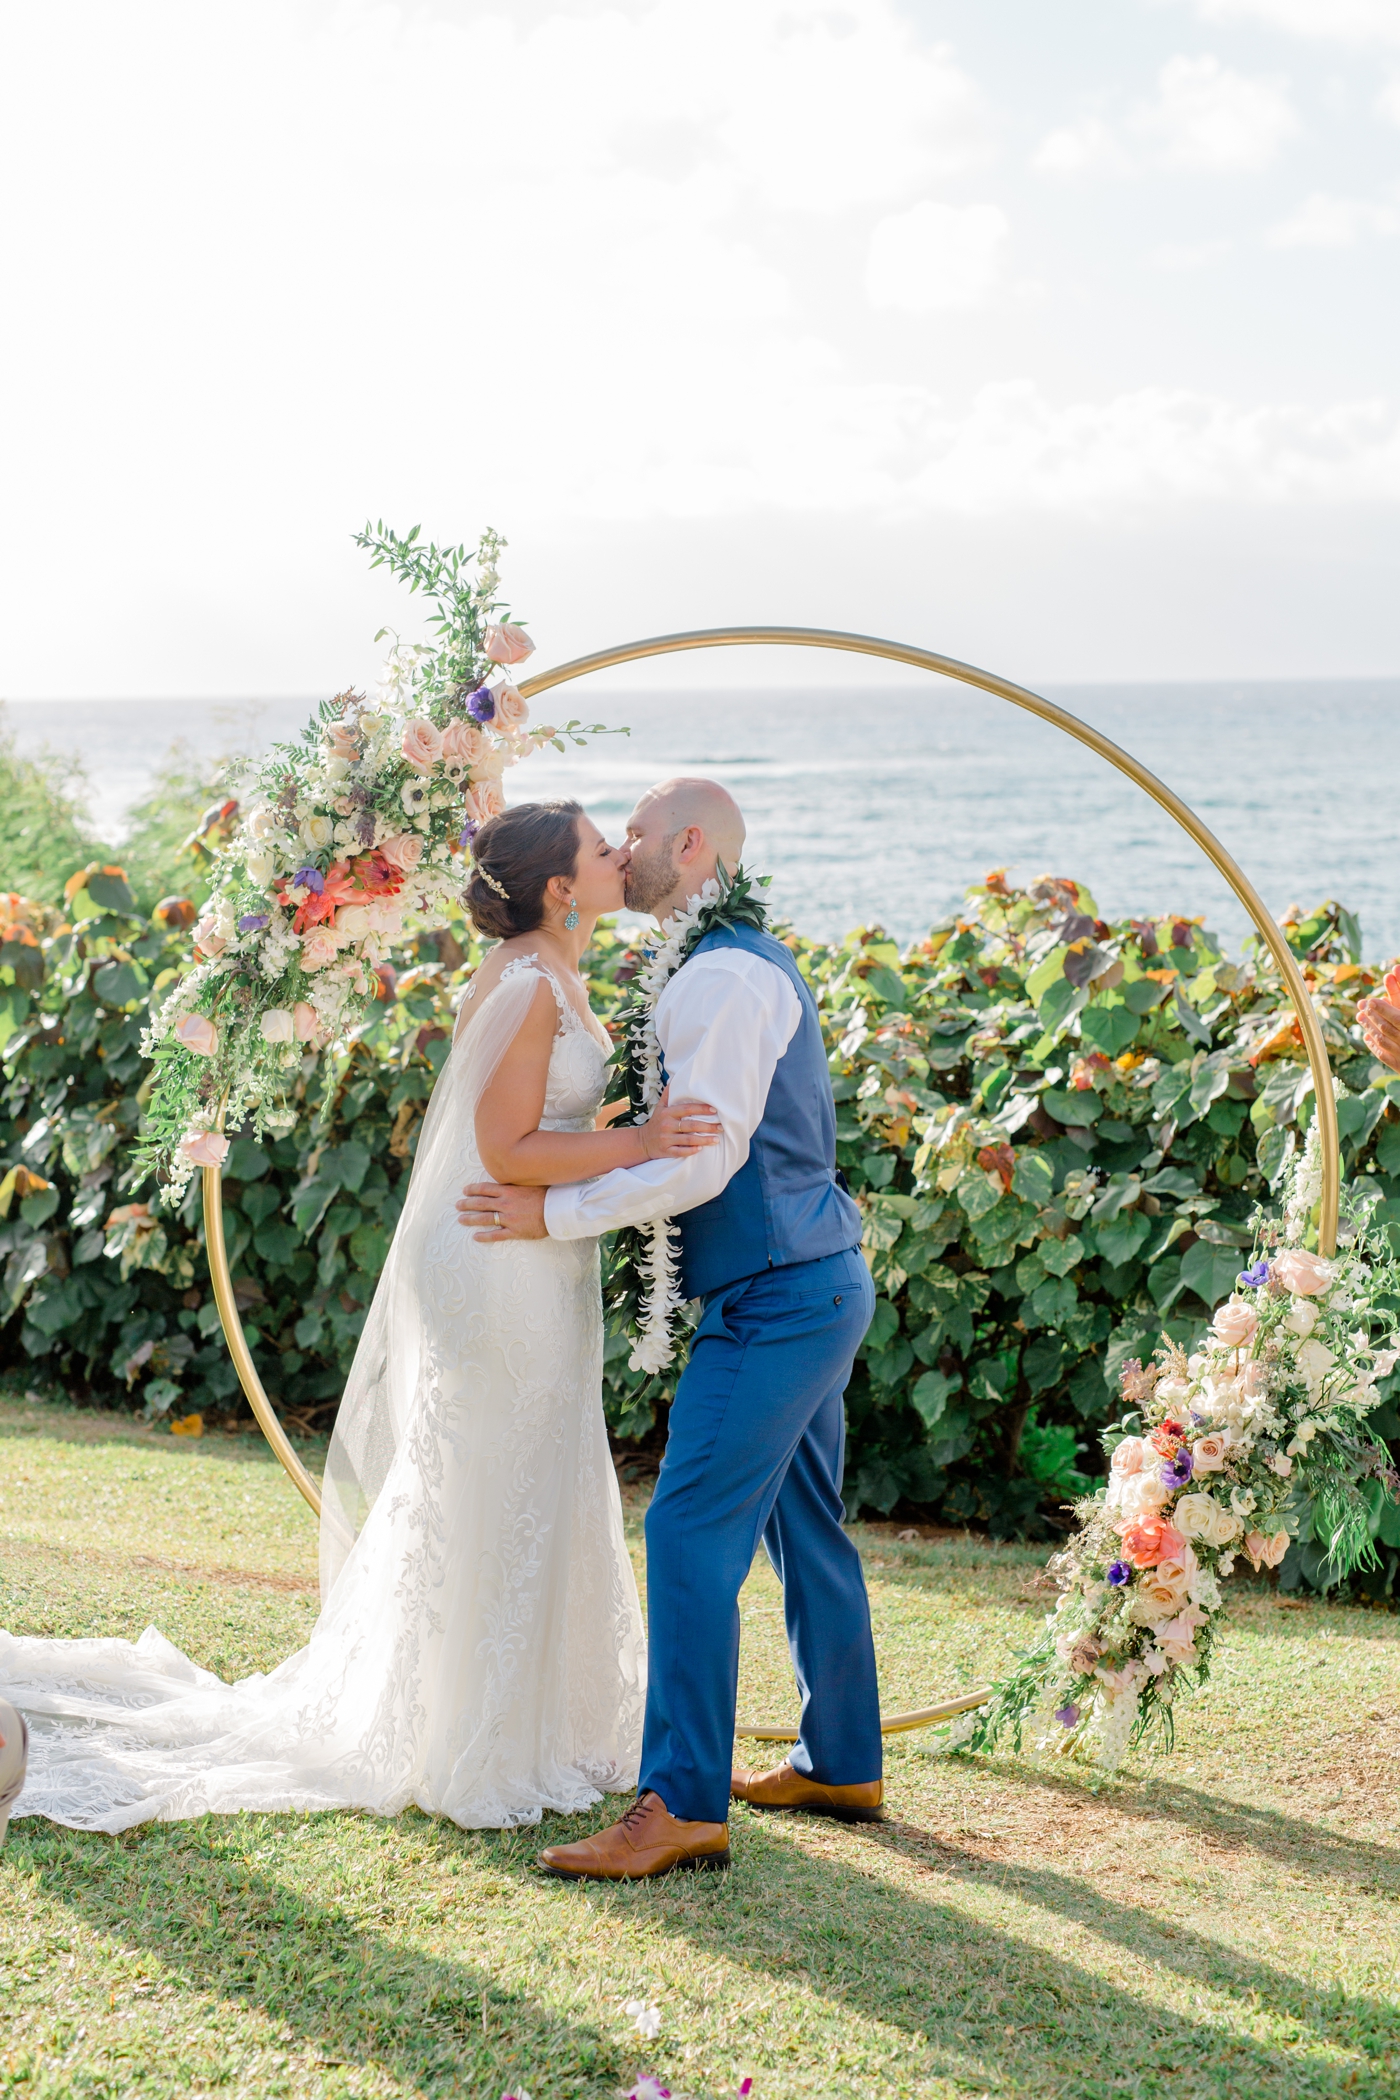 Wedding ceremony overlooking the ocean at Merriman’s in Kapalua